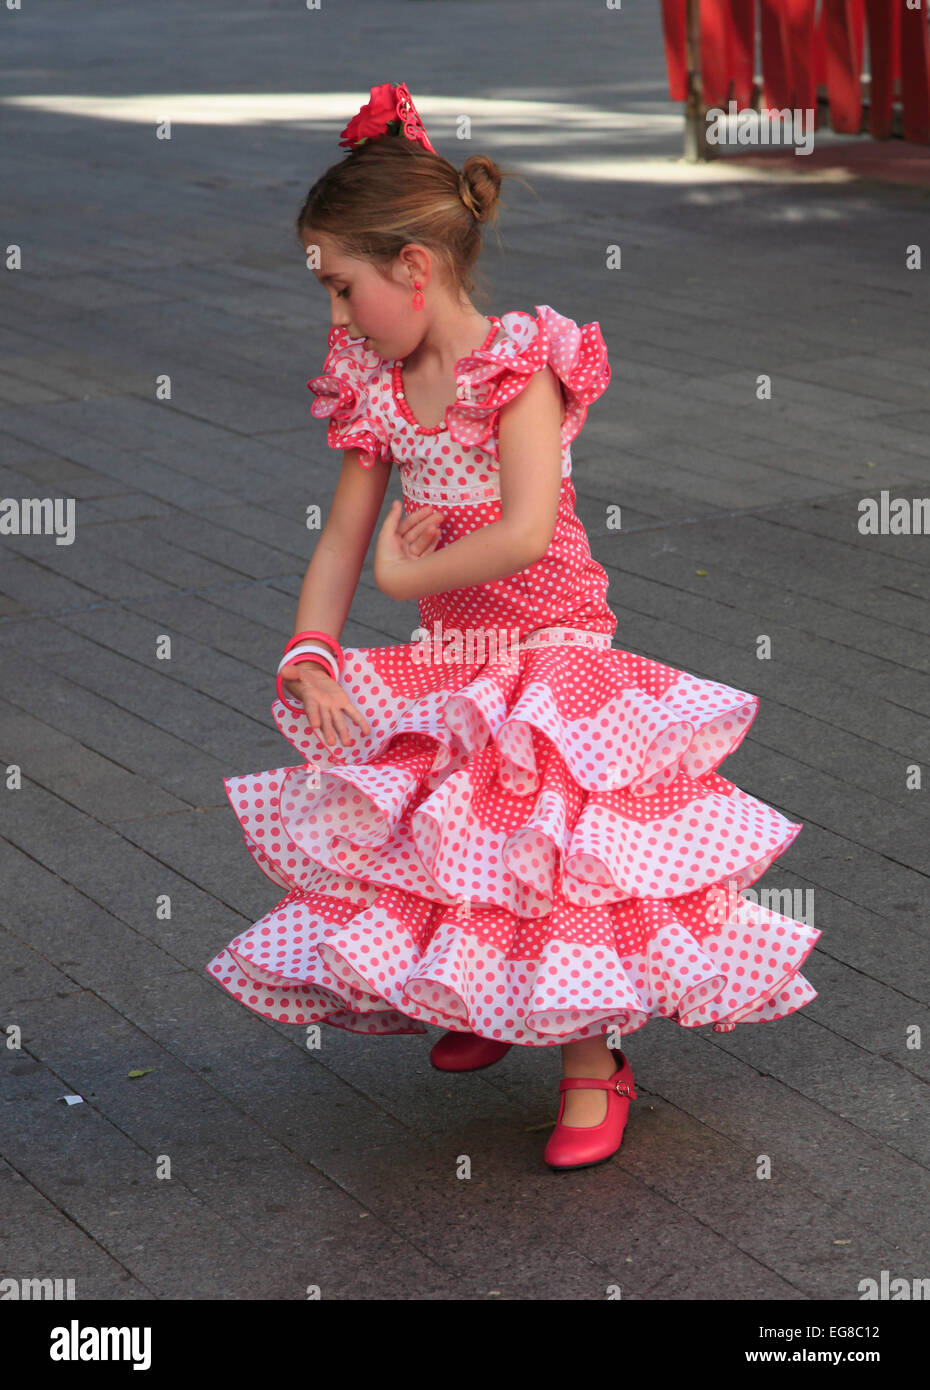 Spagna, Andalusia, Siviglia, equo, Feria de abril, persone, festival, abito tradizionale, bambina, dancing, Foto Stock